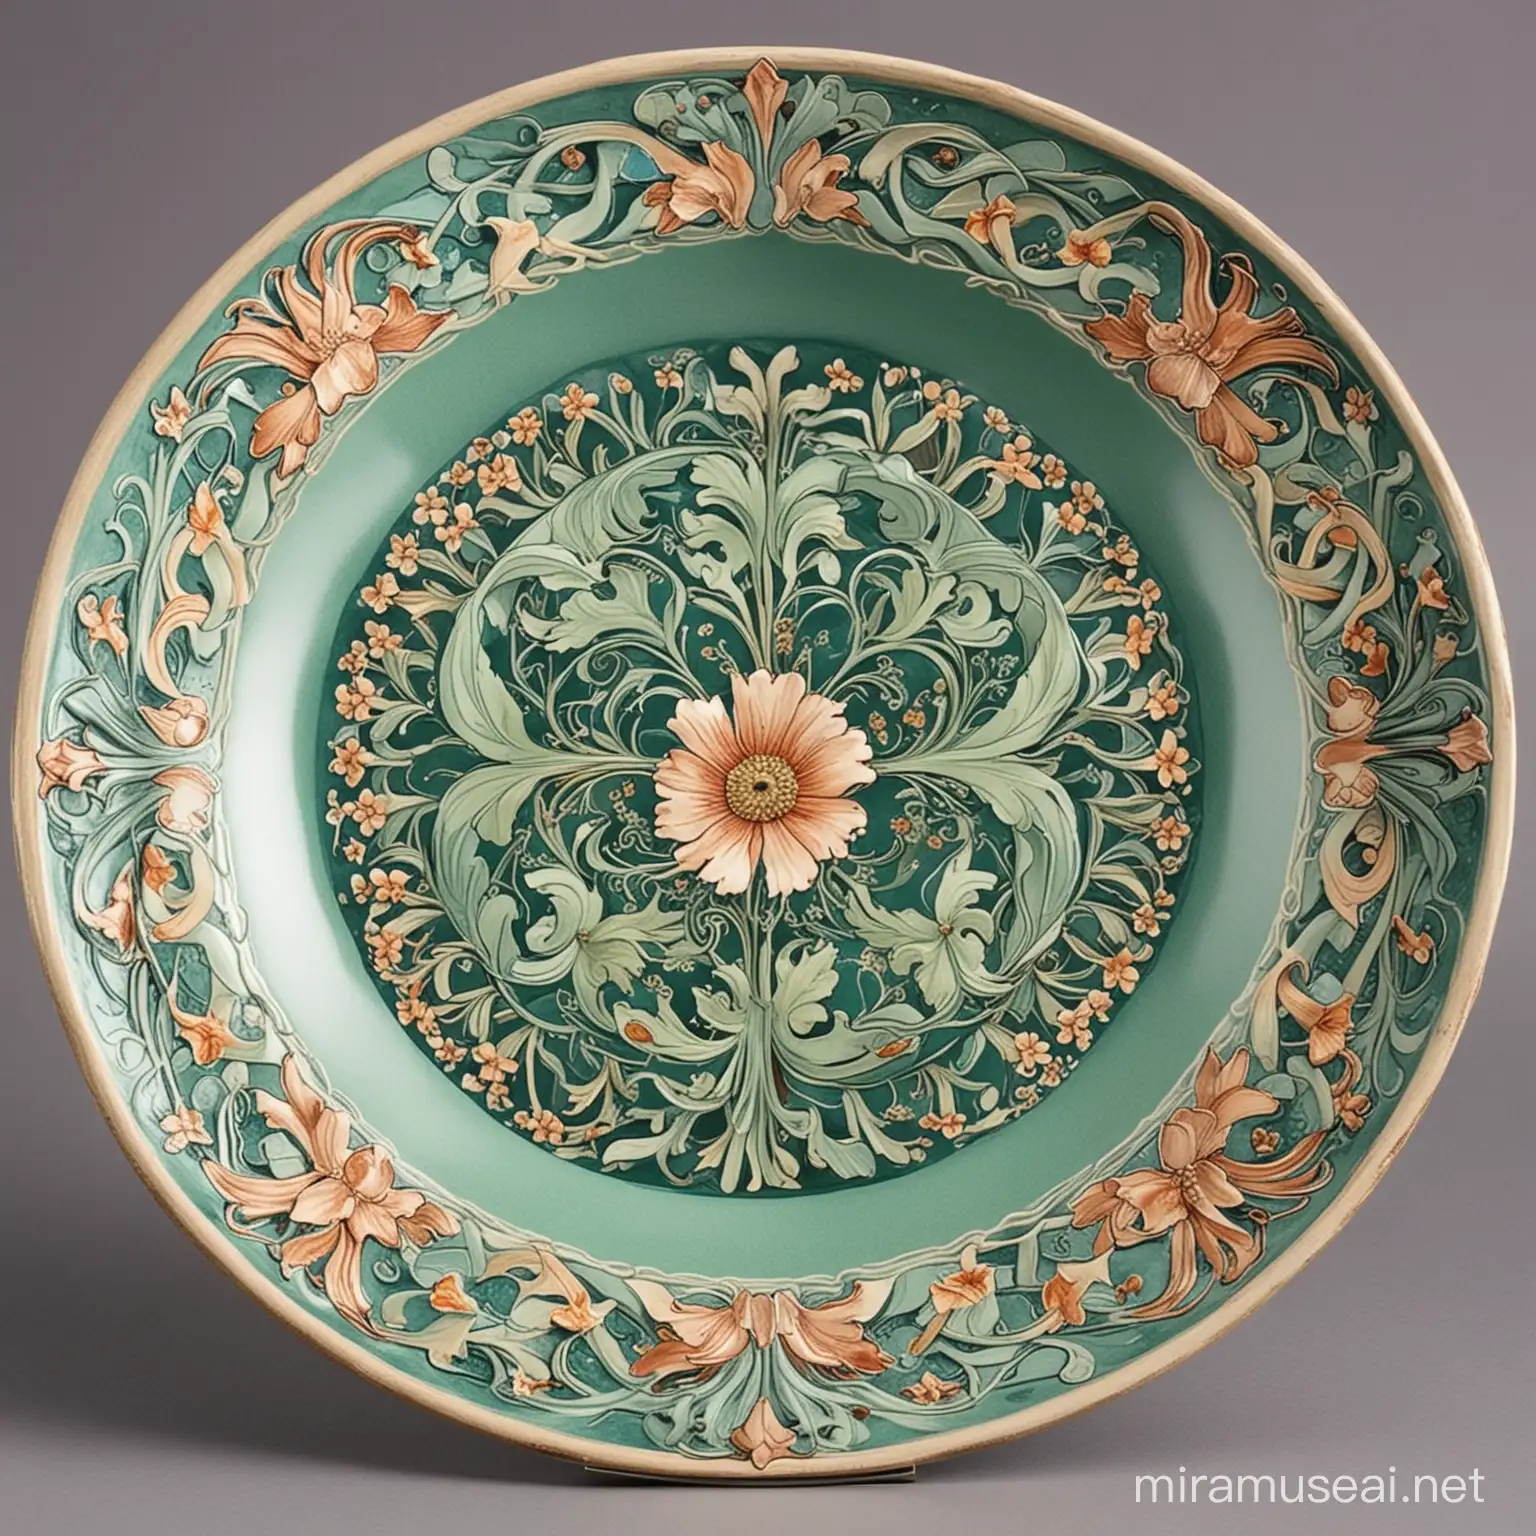 Art Nouveau Style Plate with Floral Motifs